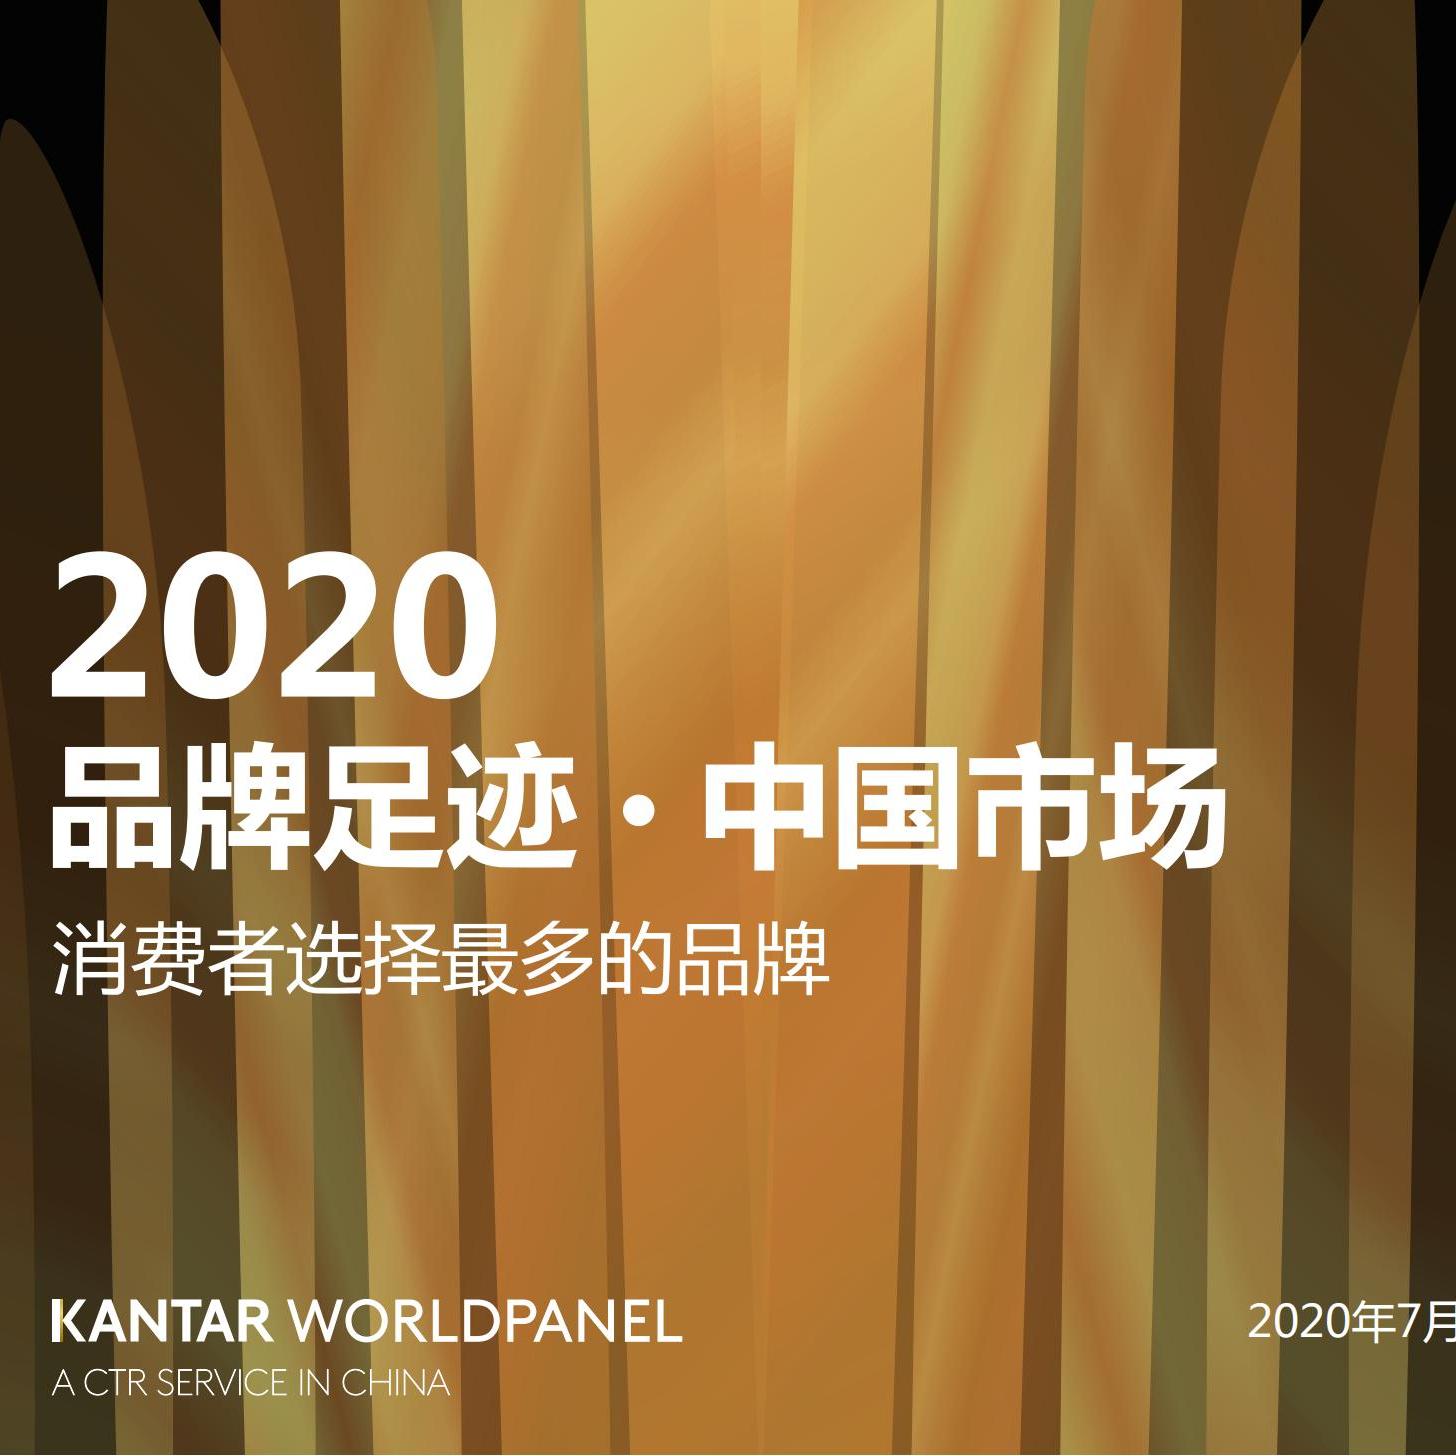 2020中国品牌足迹(印刷版)